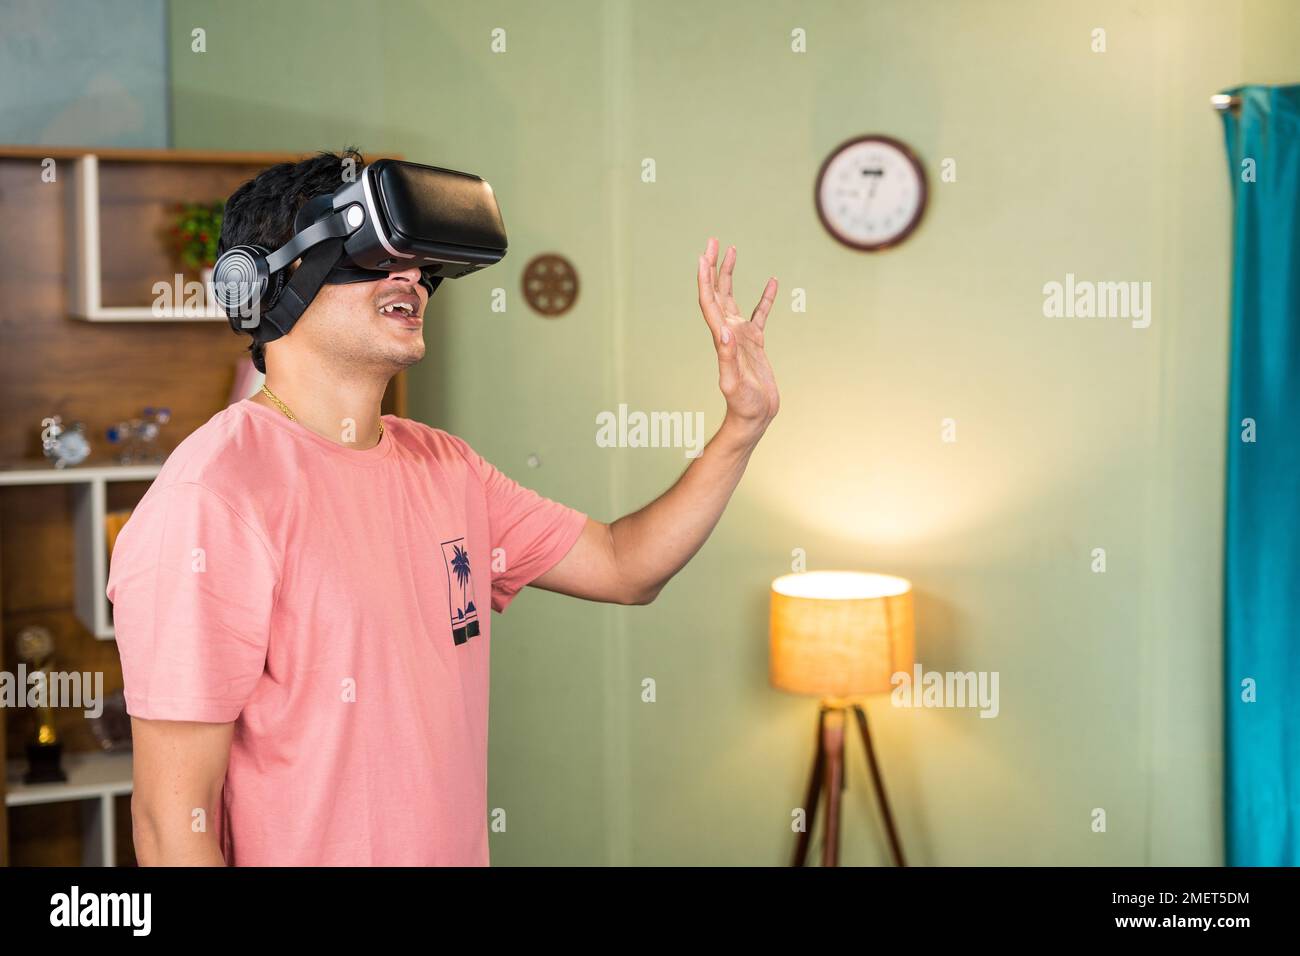 Junger Mann, der beim Online-Treffen in der metaversen oder virutalen Welt Hand winkt, indem er ein Virtual-Reality- oder VR-Headset trägt – Konzept von futuristischer Technologie Stockfoto